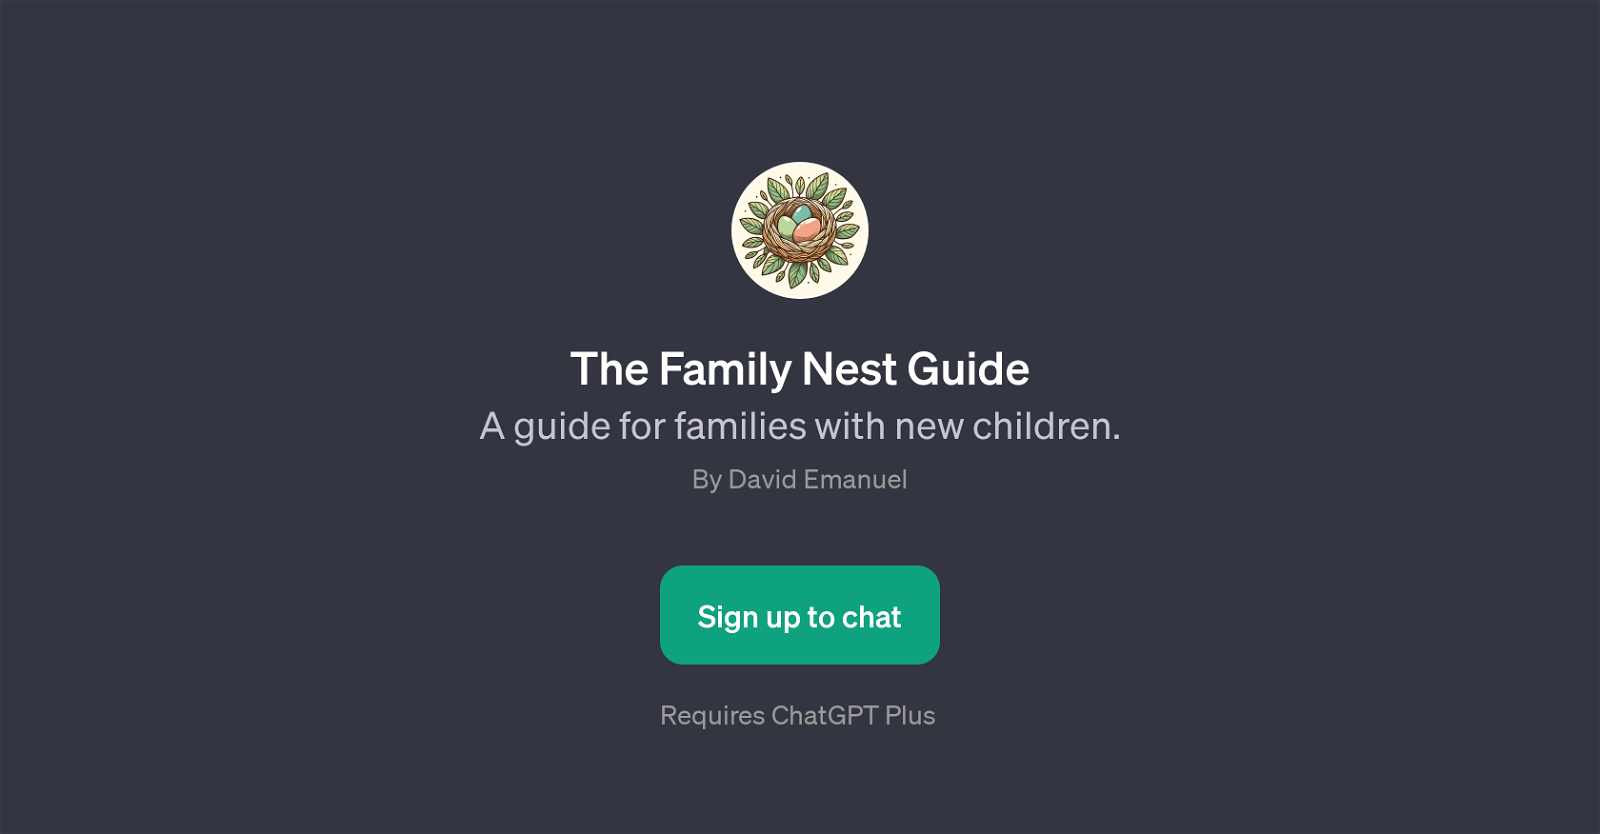 The Family Nest Guide website